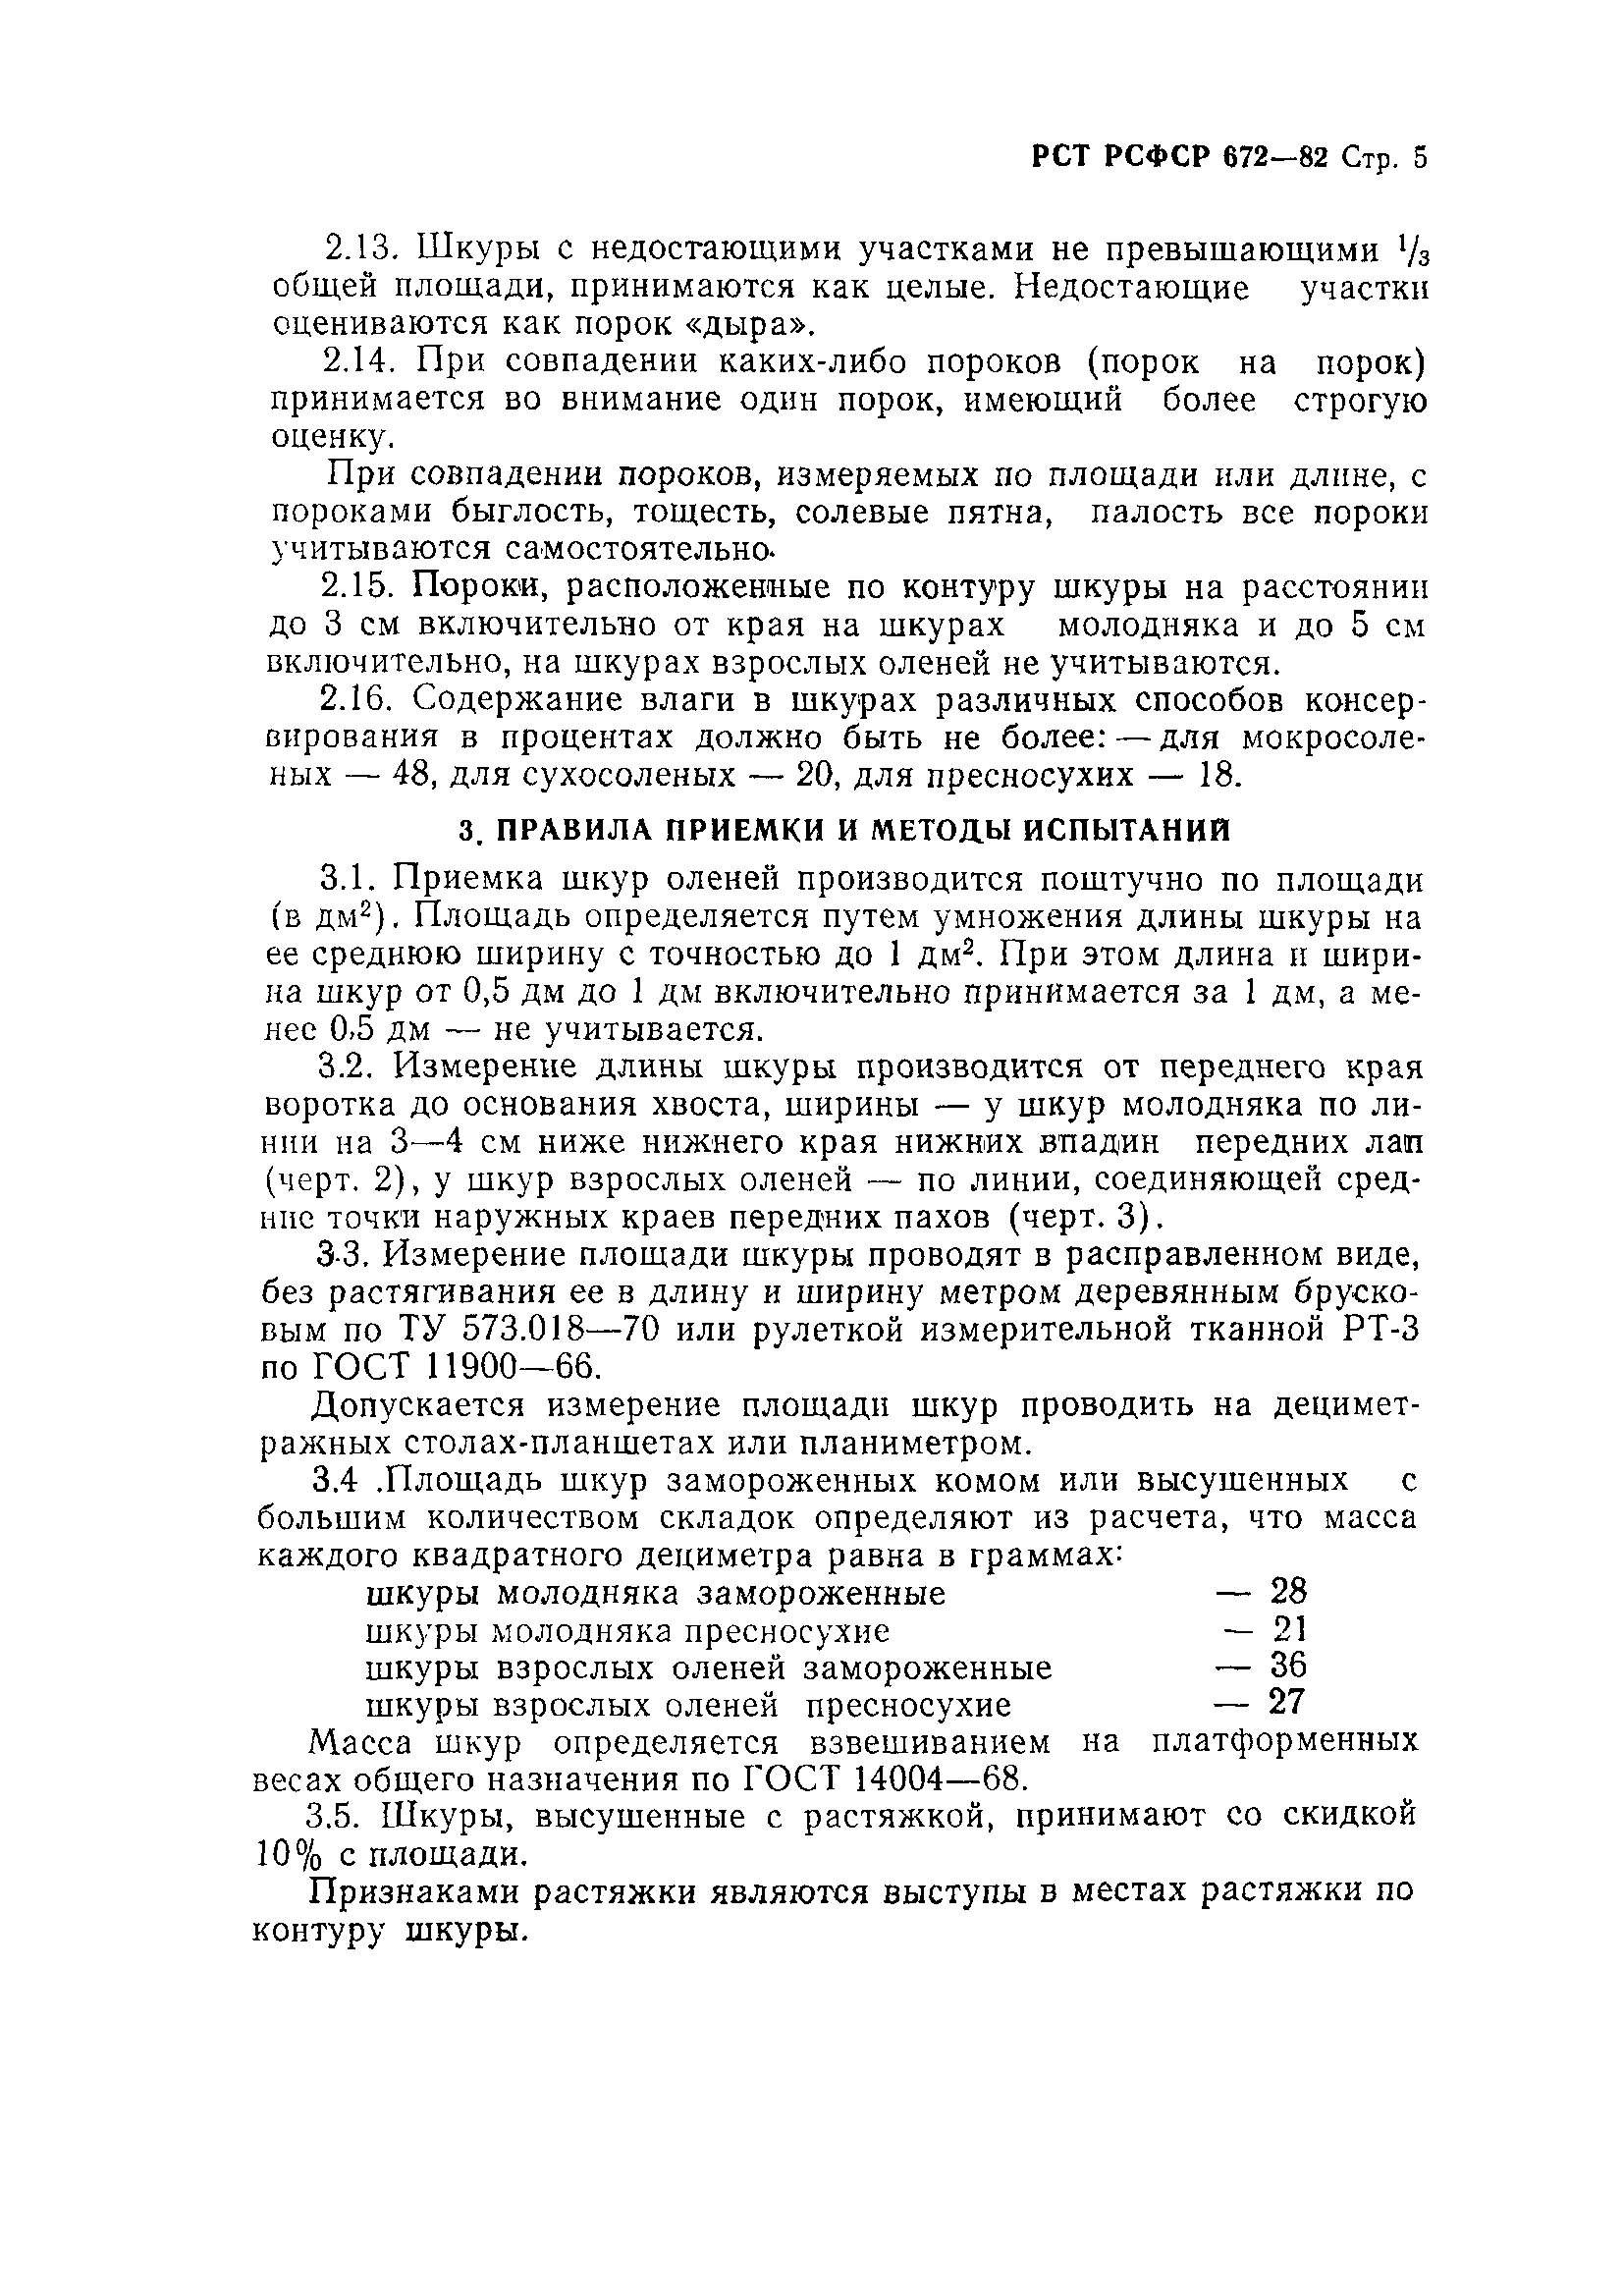 РСТ РСФСР 672-82